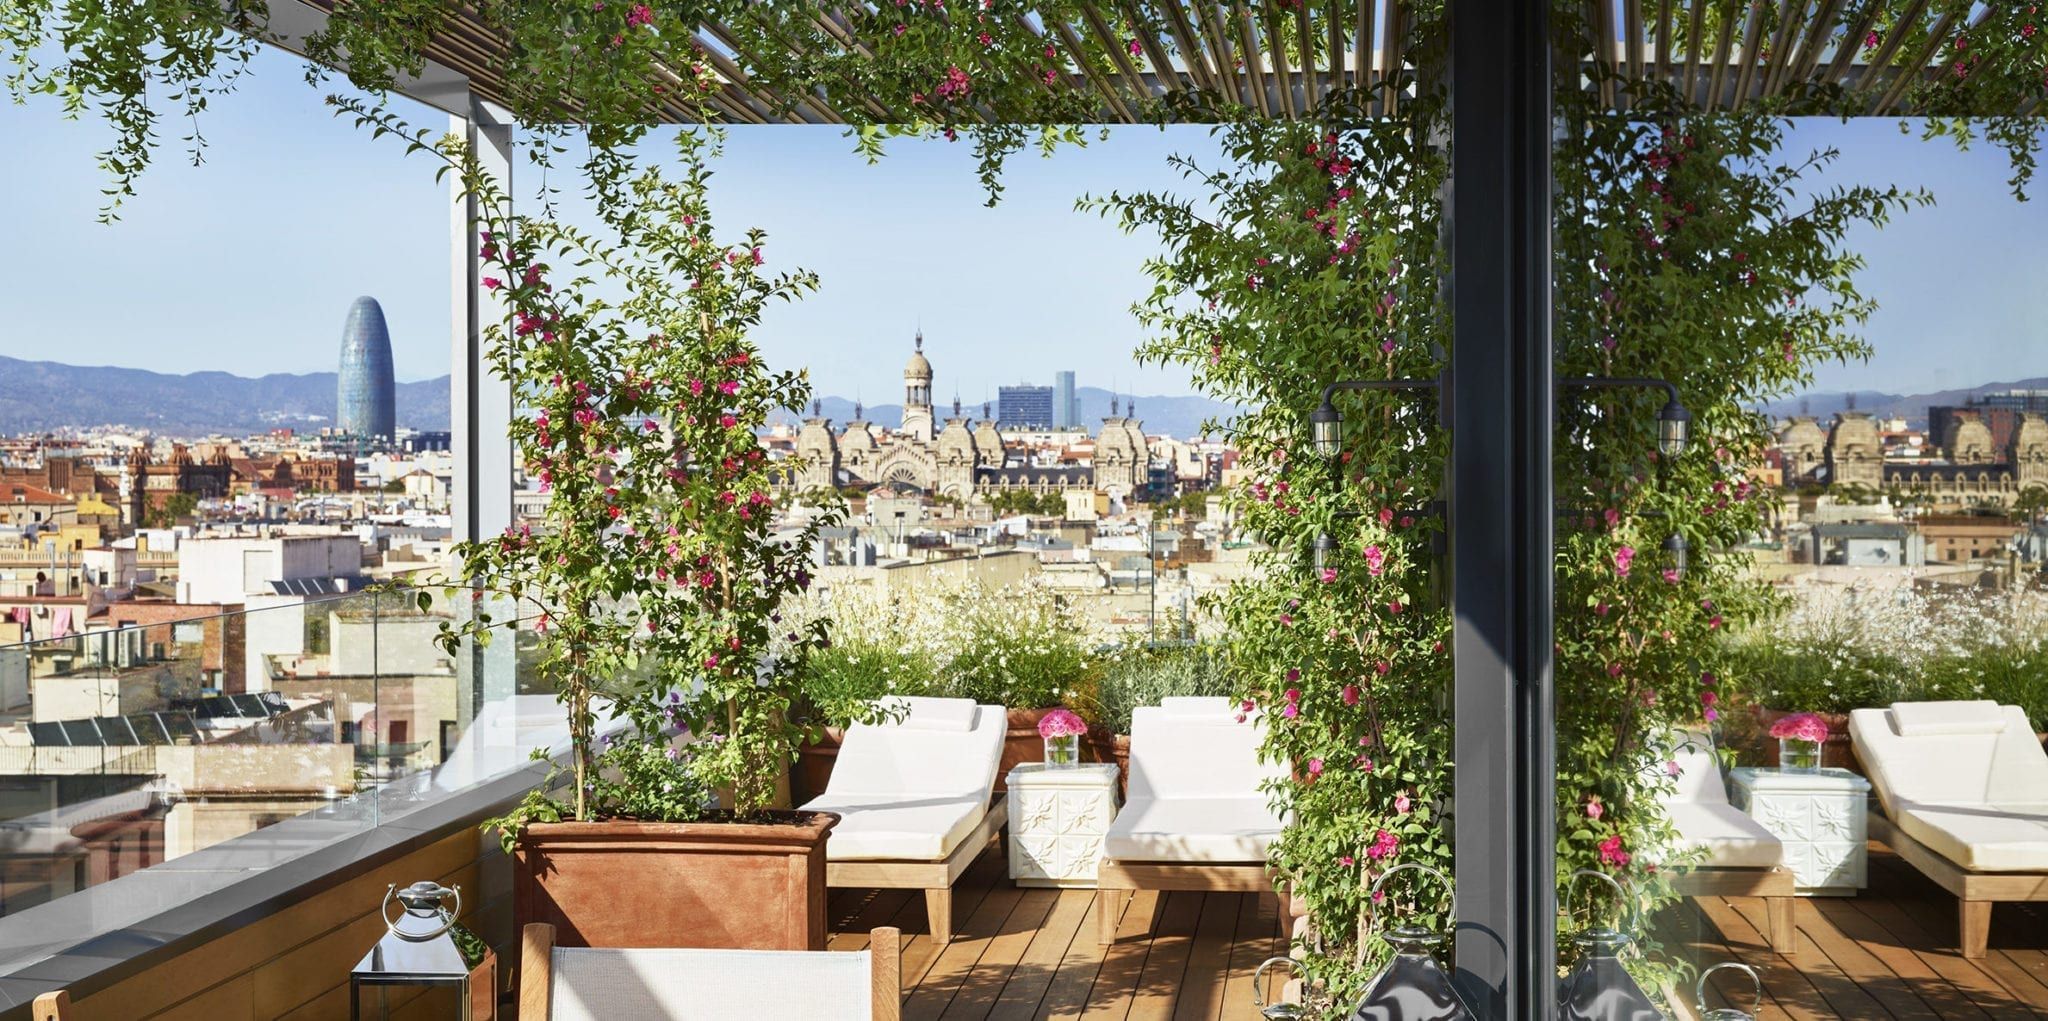 Las Mejores Terrazas De Hotel En Barcelona 2020 Terrazeo